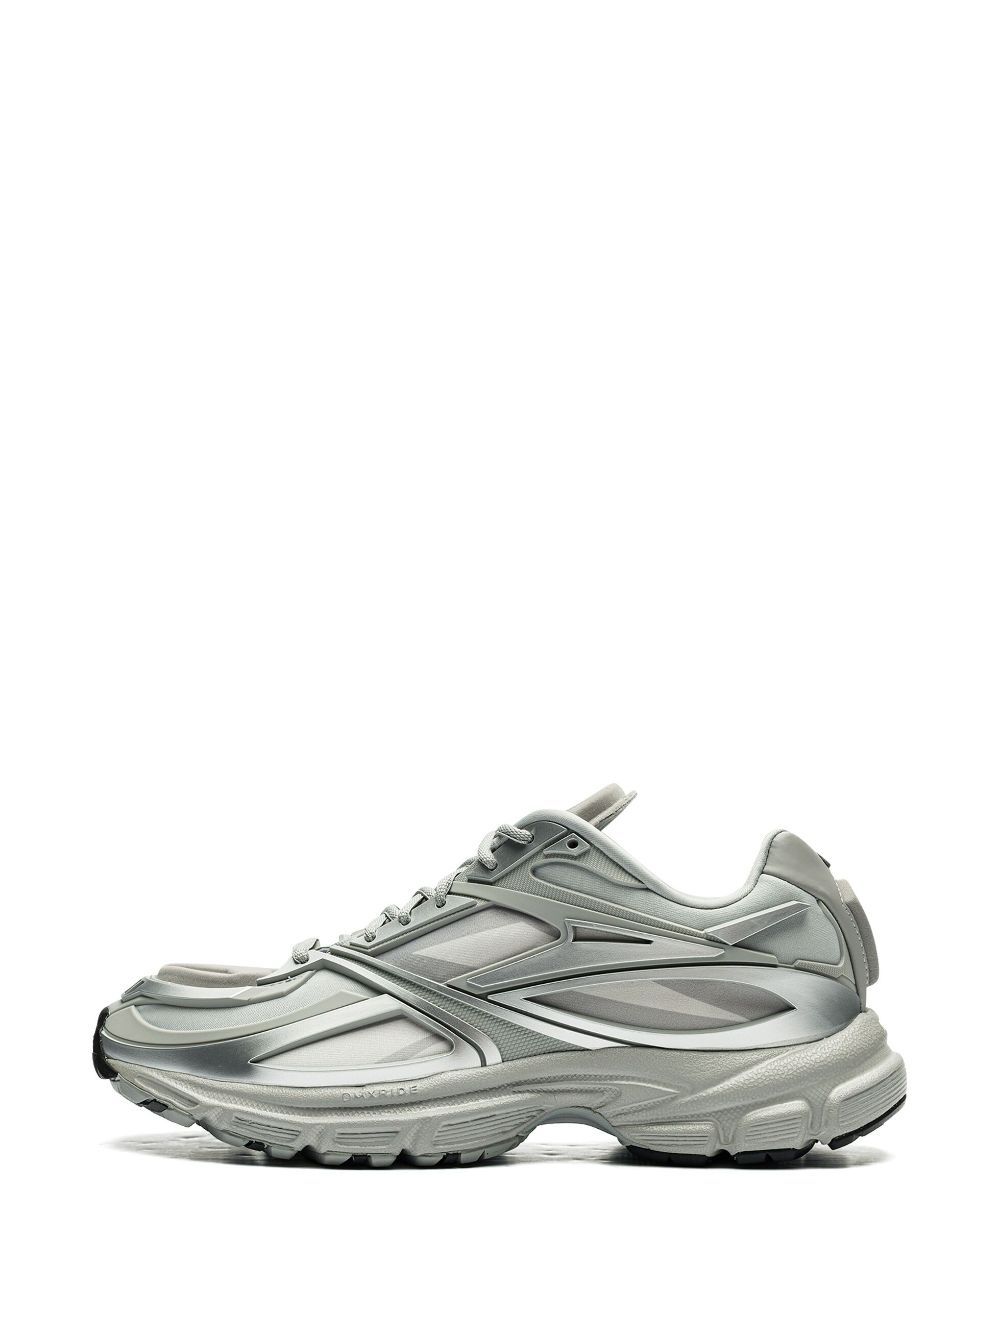 Shop Reebok Ltd Premier Road Modern "silver" Sneakers